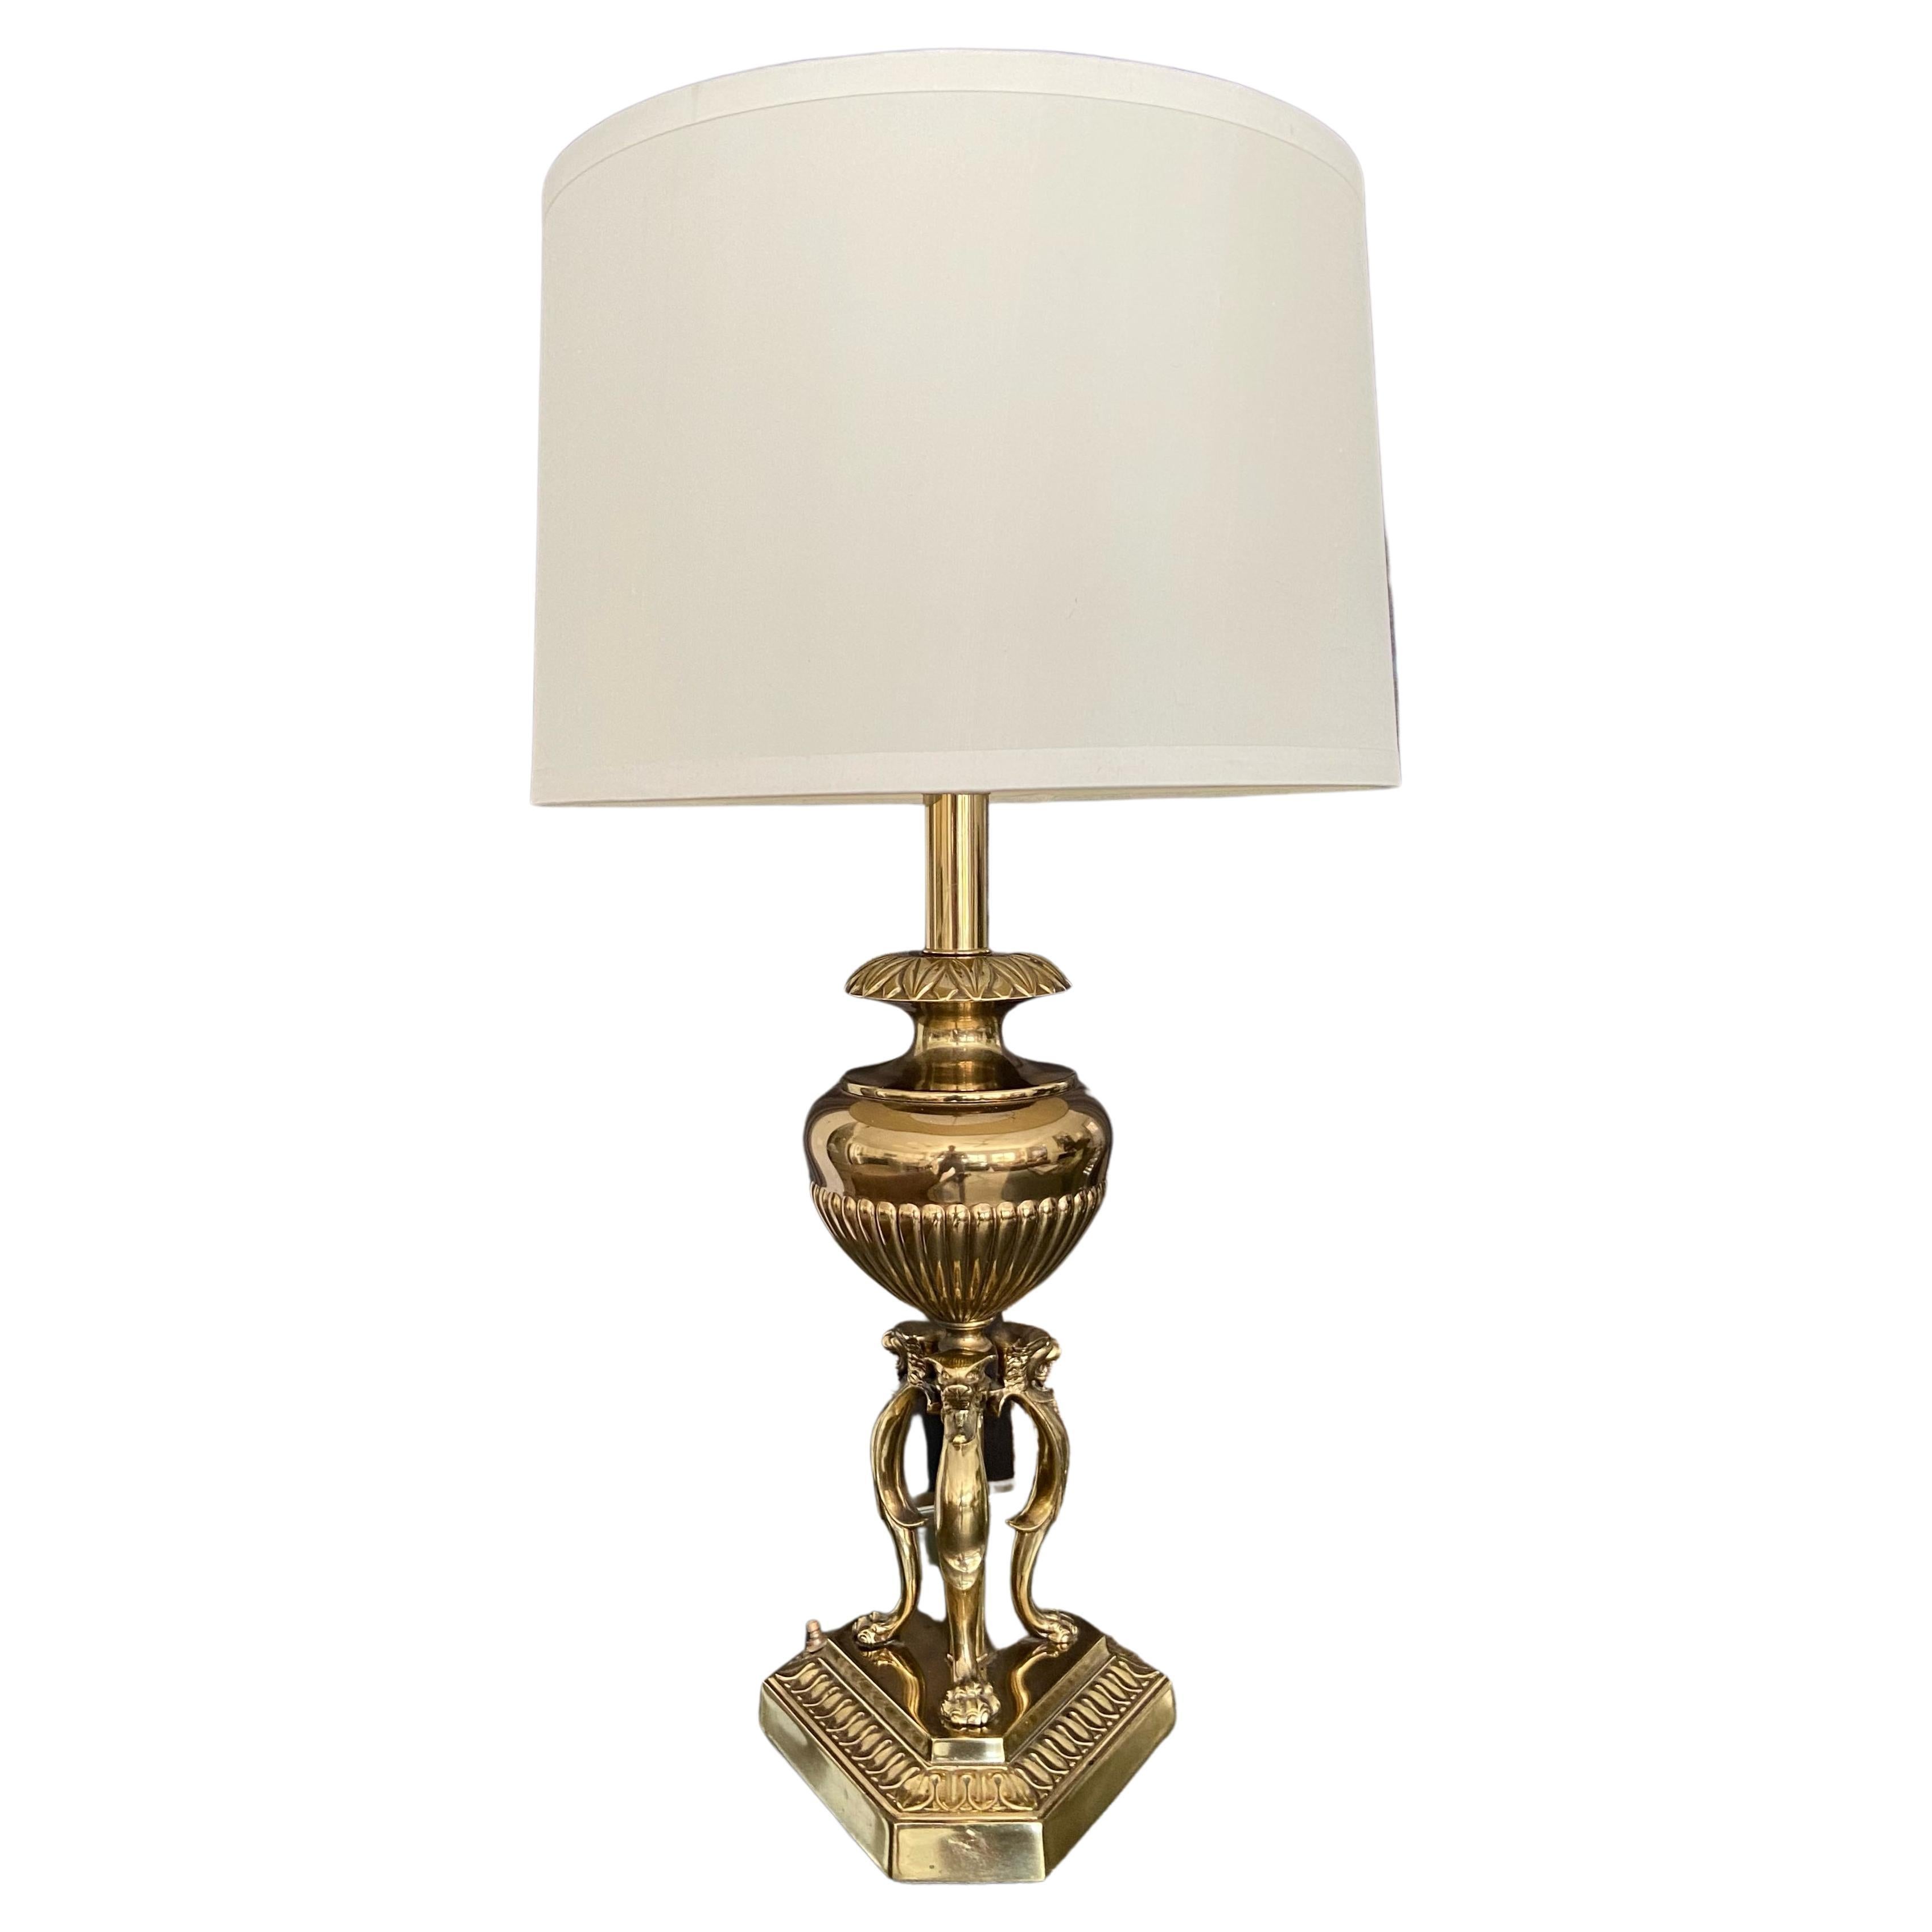 Single Rembrandt Brass Lion Motif Table Lamp